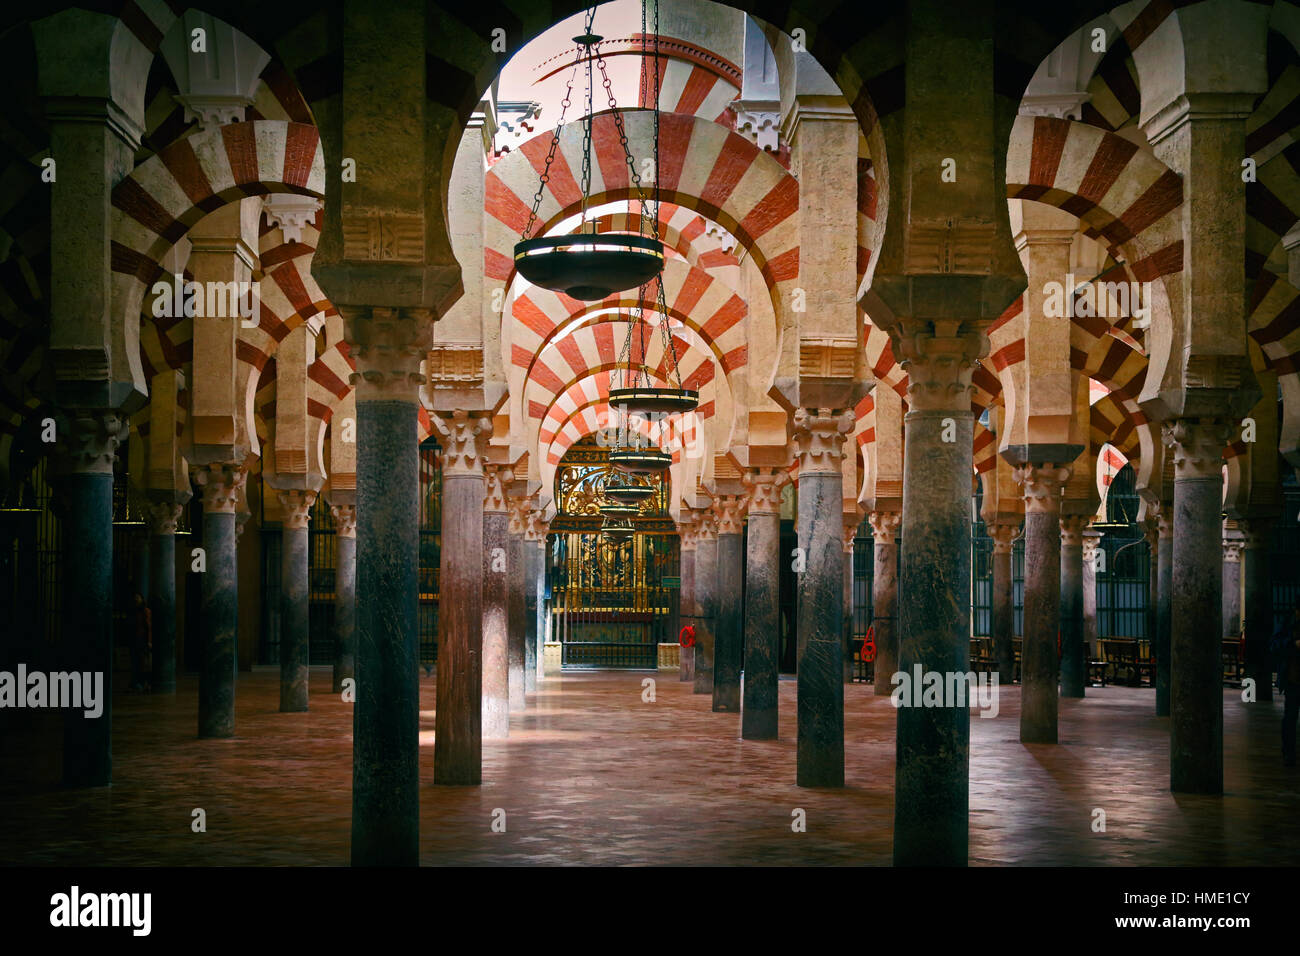 Cordoba, Cordoue, Andalousie, province du sud de l'Espagne. L'intérieur de la Mezquita, ou grande mosquée. Le centre historique de Cordoue est un H Banque D'Images